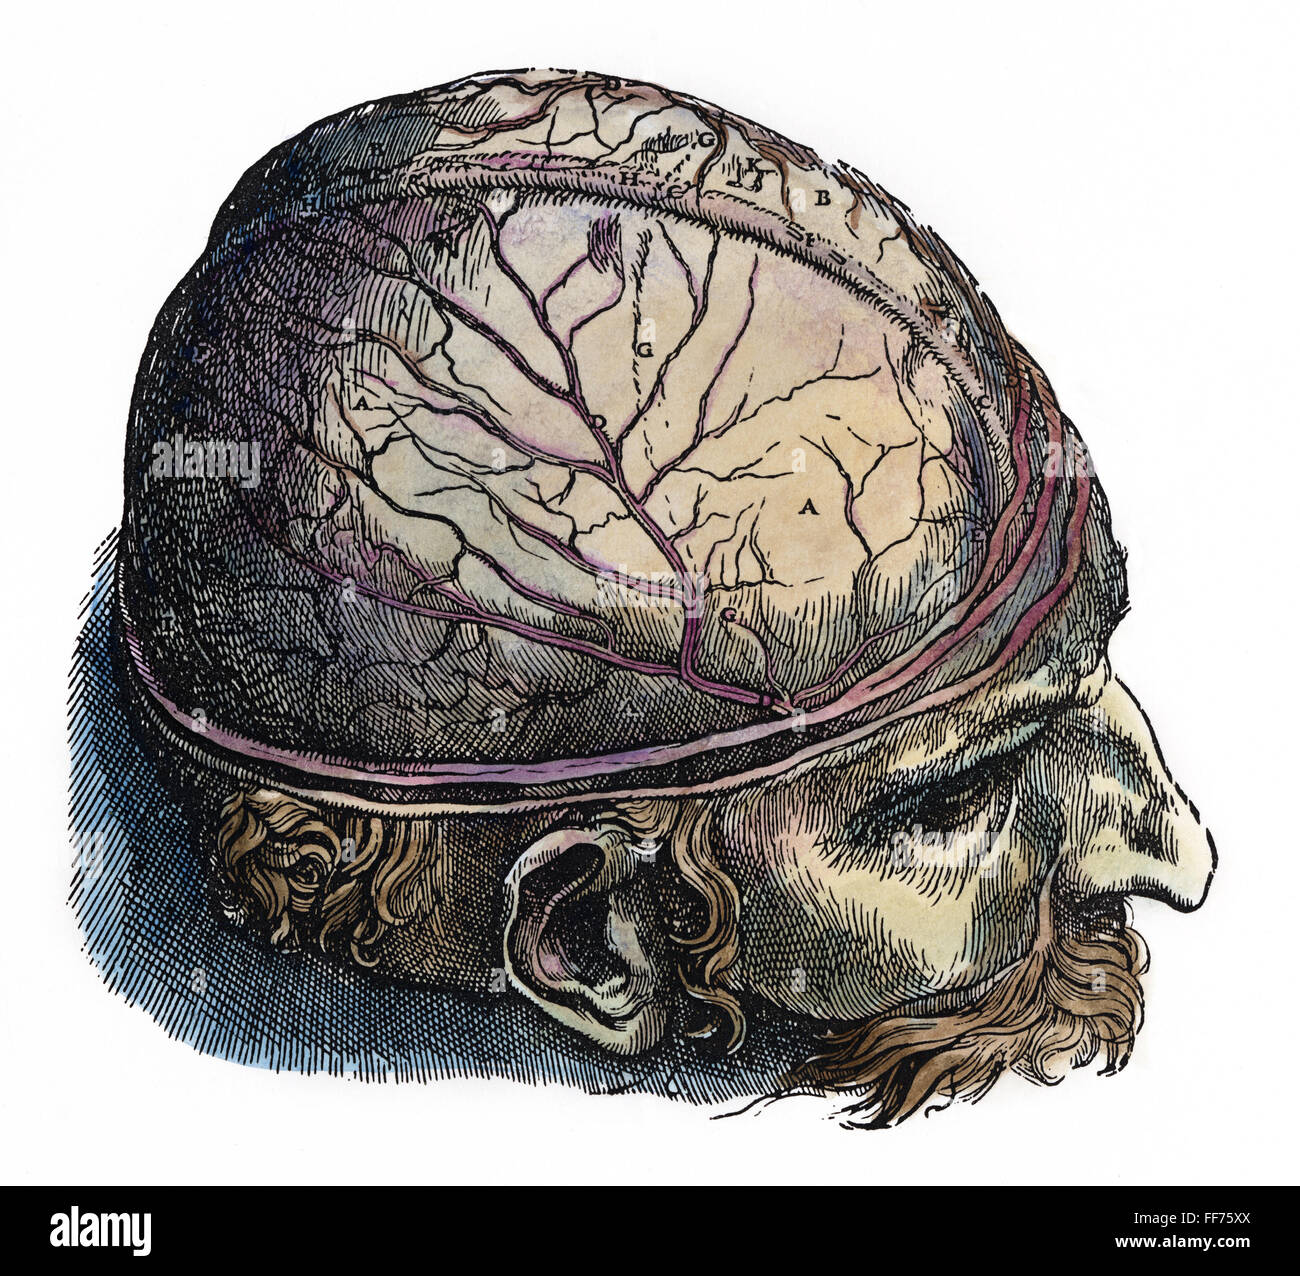 Vesalio: cráneo. /NDissection del cráneo. Xilografía en color desde el séptimo libro de Andreas Vesalio', 'De Humani Corporis Fabrica', publicado en 1543 en Basilea. Foto de stock